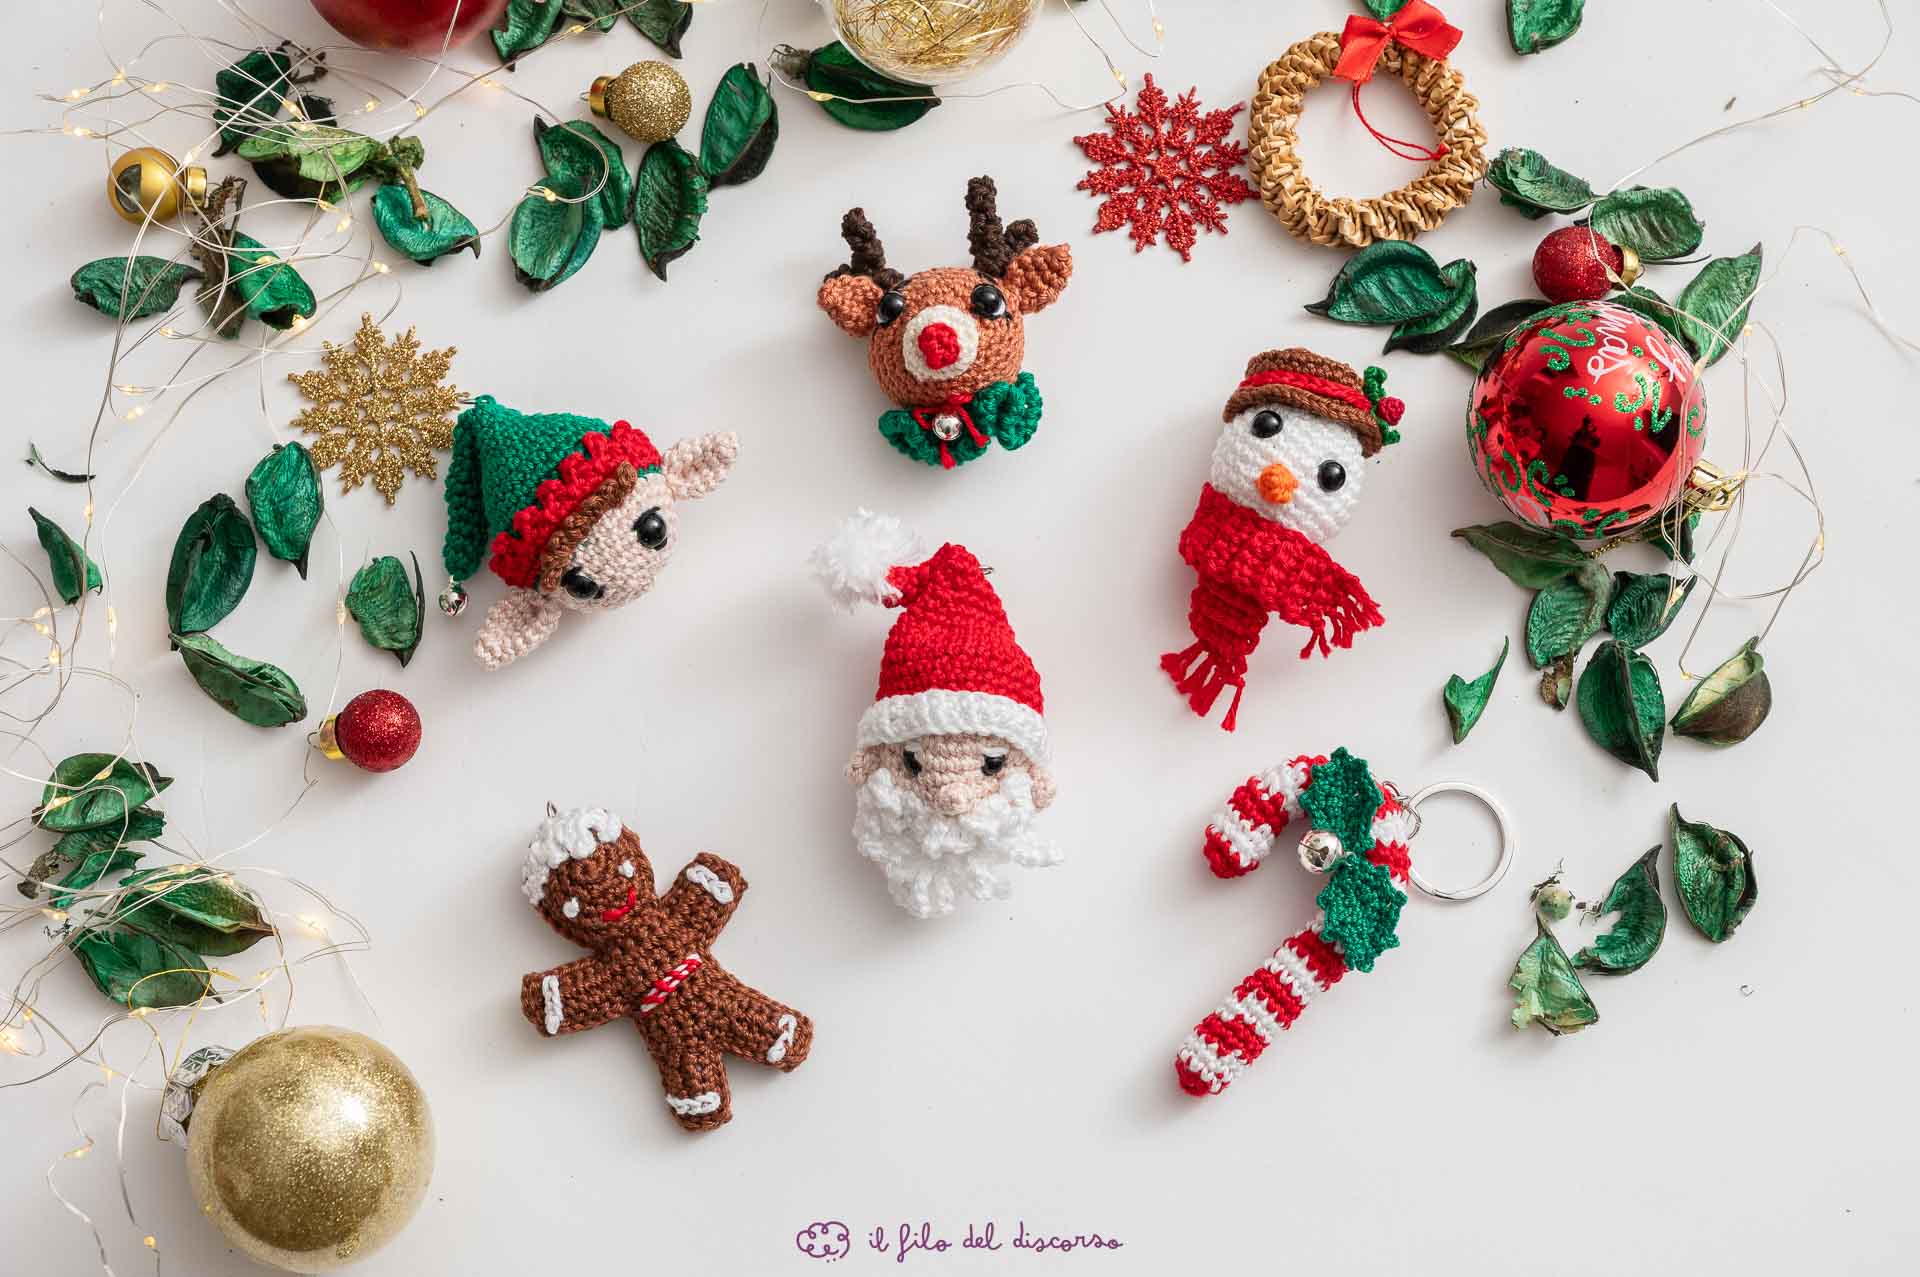 portachiavi realizzati all'uncinetto con tema Natale. Diversi soggetti: renna, elfo, bastoncino di zucchero, pupazzo di neve, omino pan di zenzero, babbo Natale.